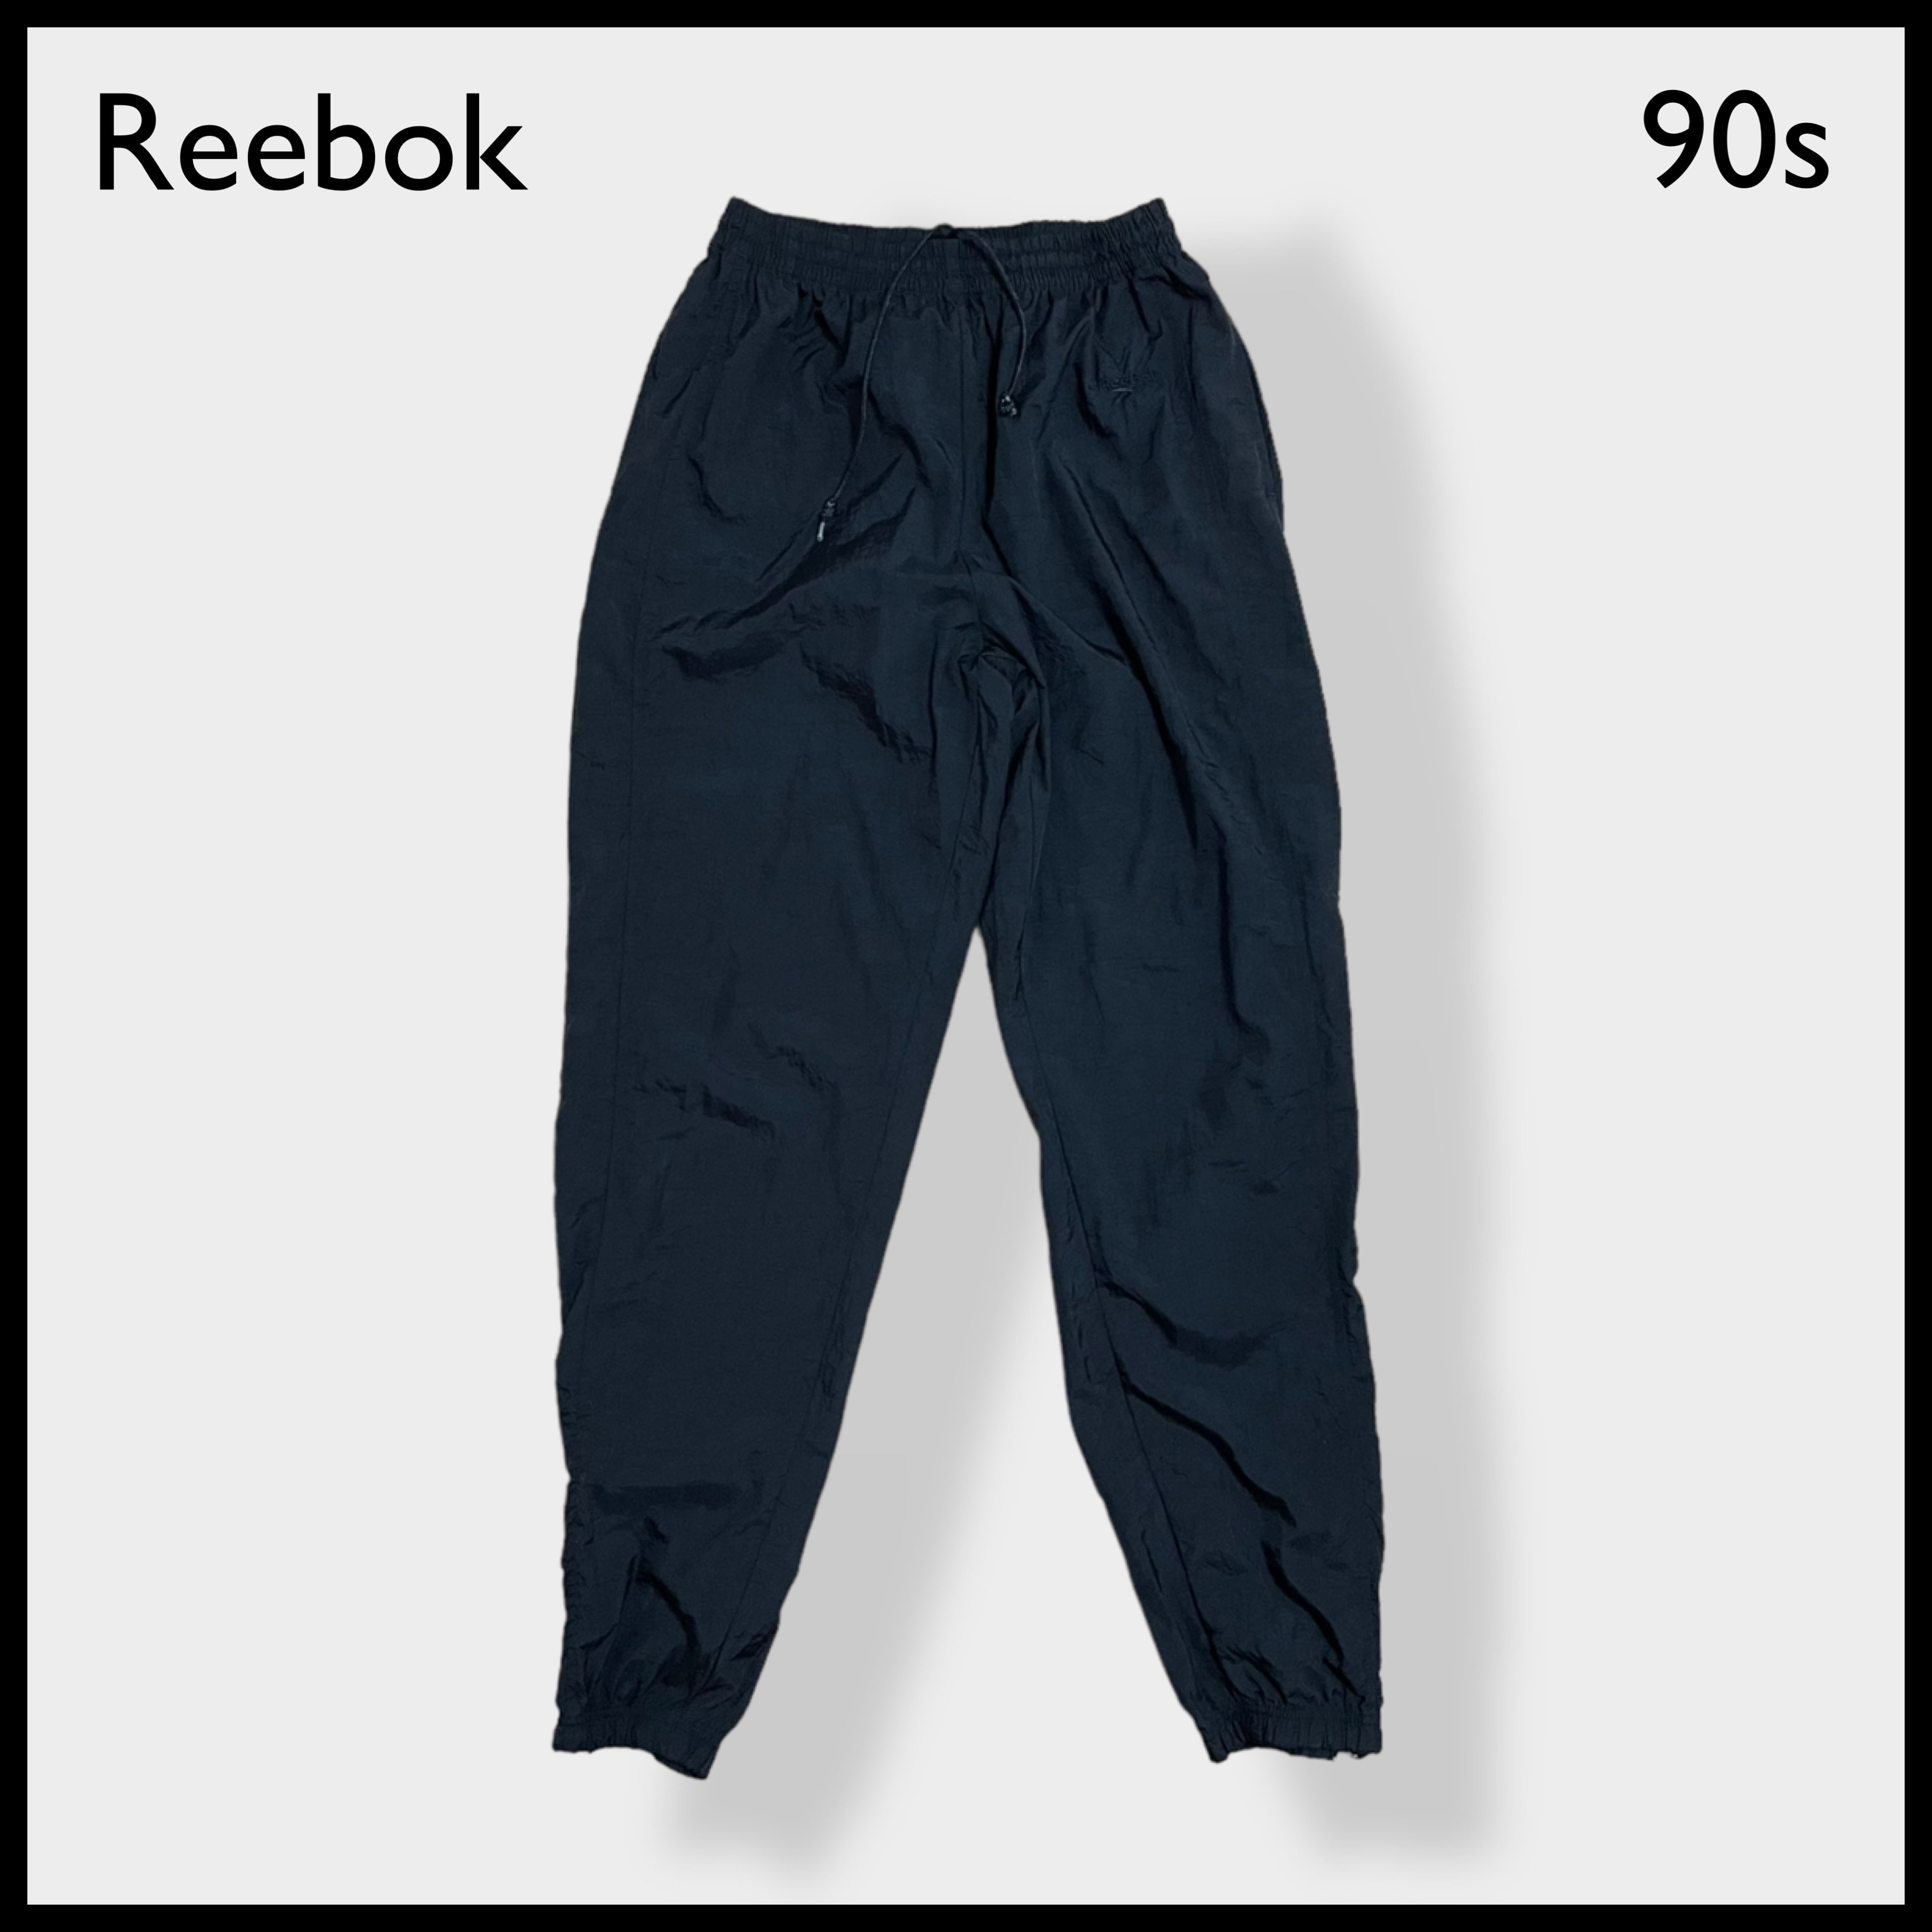 Reebok】90s 刺繍タグ ウインドブレーカーパンツ ナイロンパンツ ...